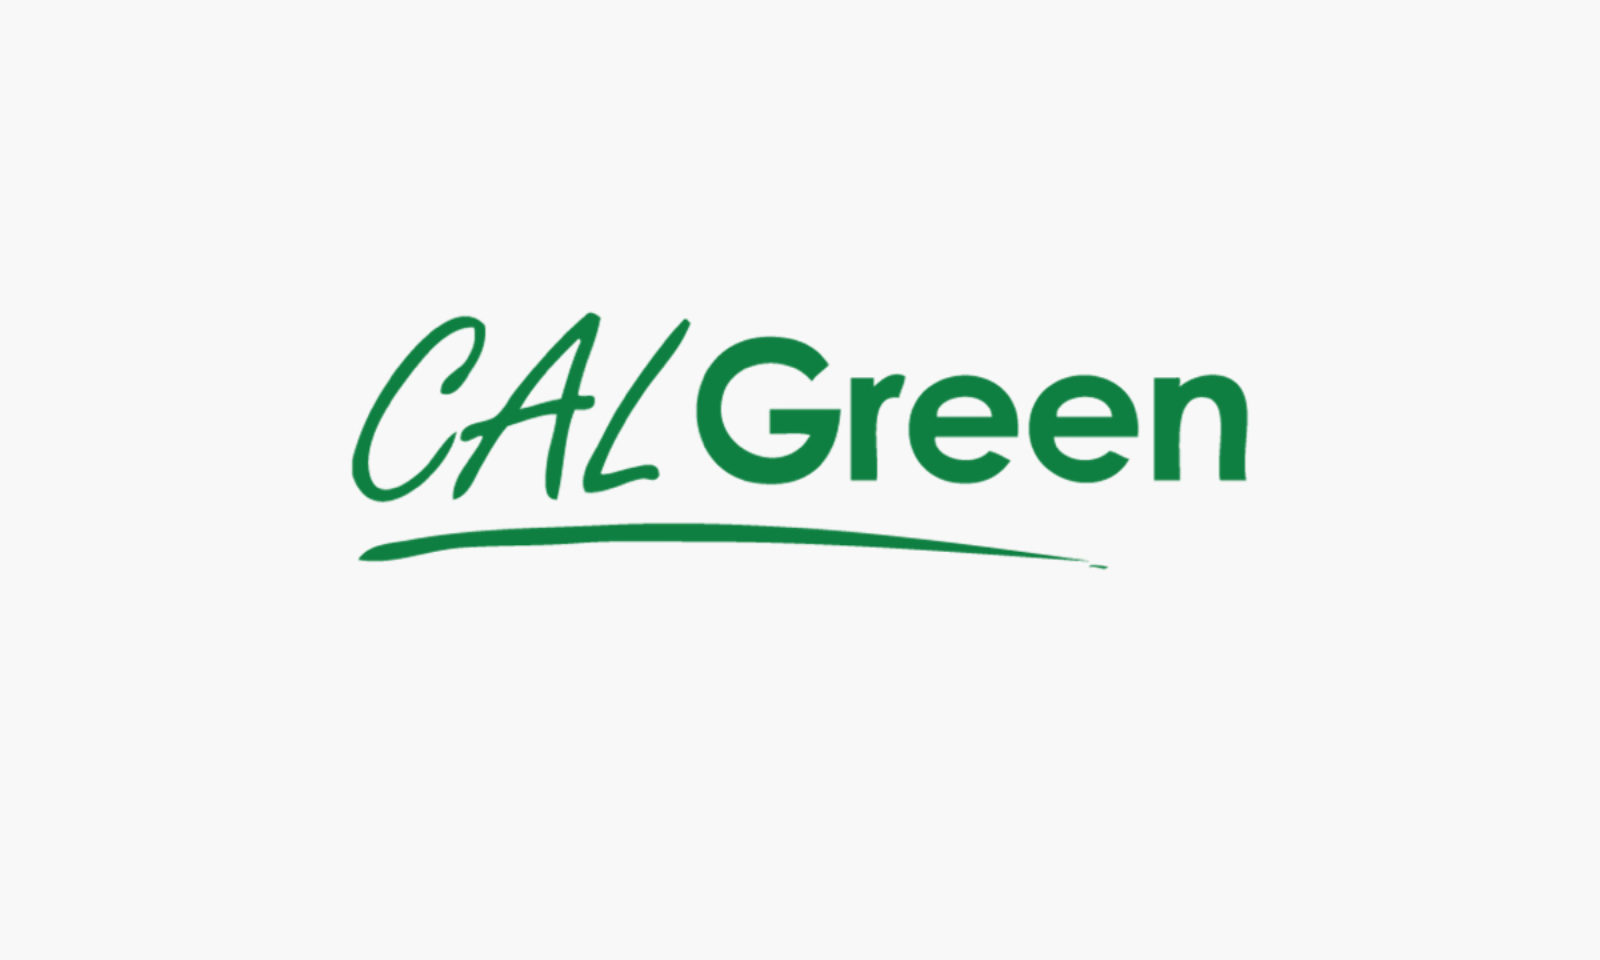 CalGreen logo